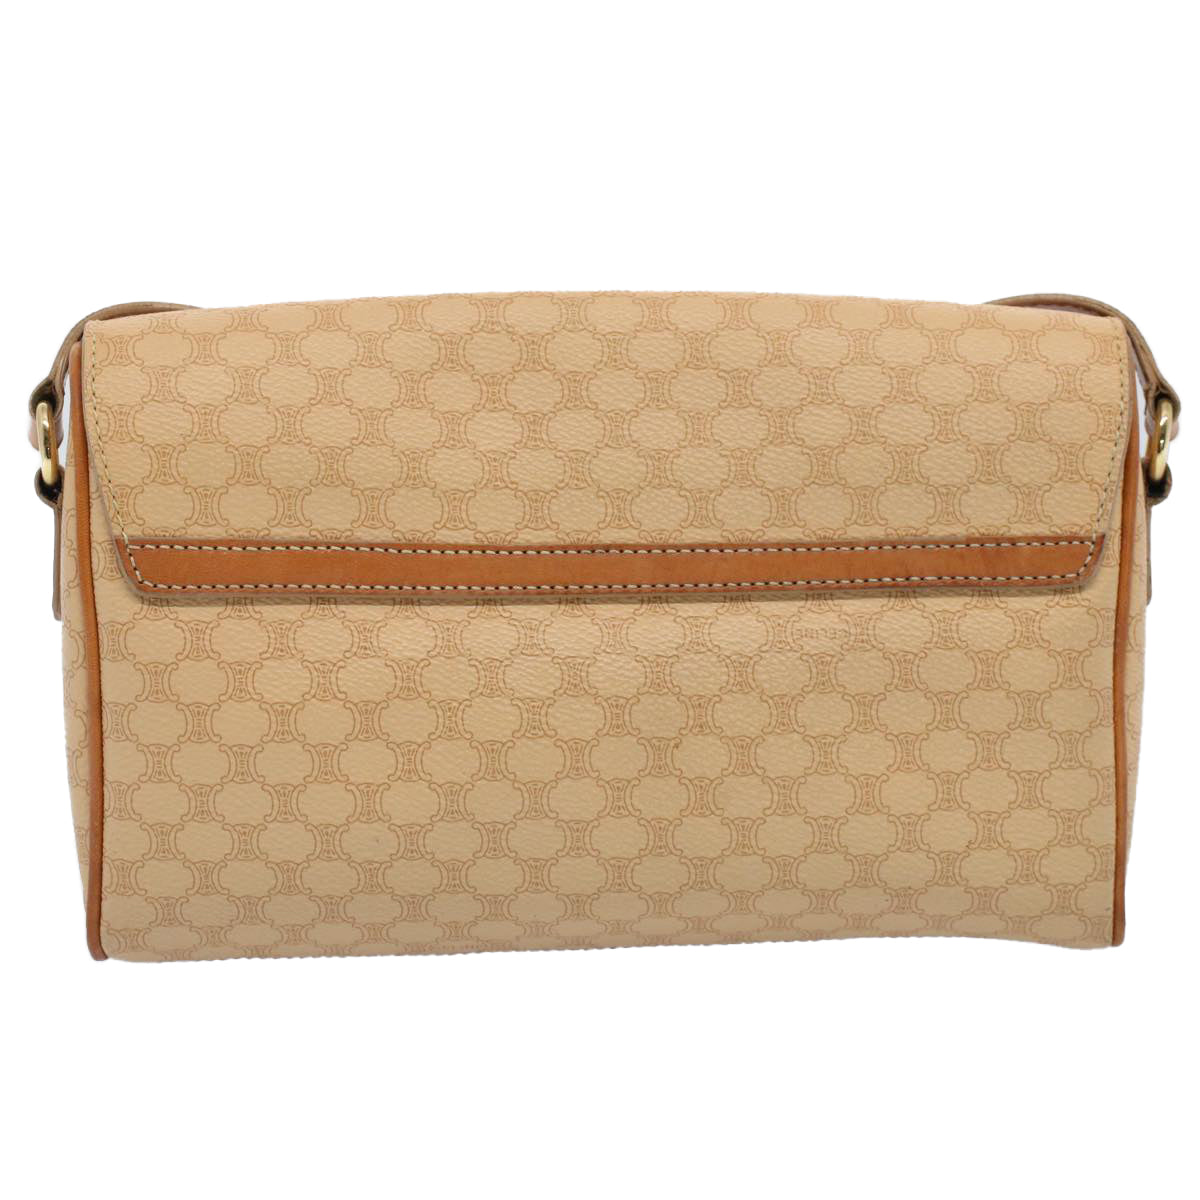 CELINE Macadam Canvas Shoulder Bag PVC Leather Beige Auth 52441 - 0